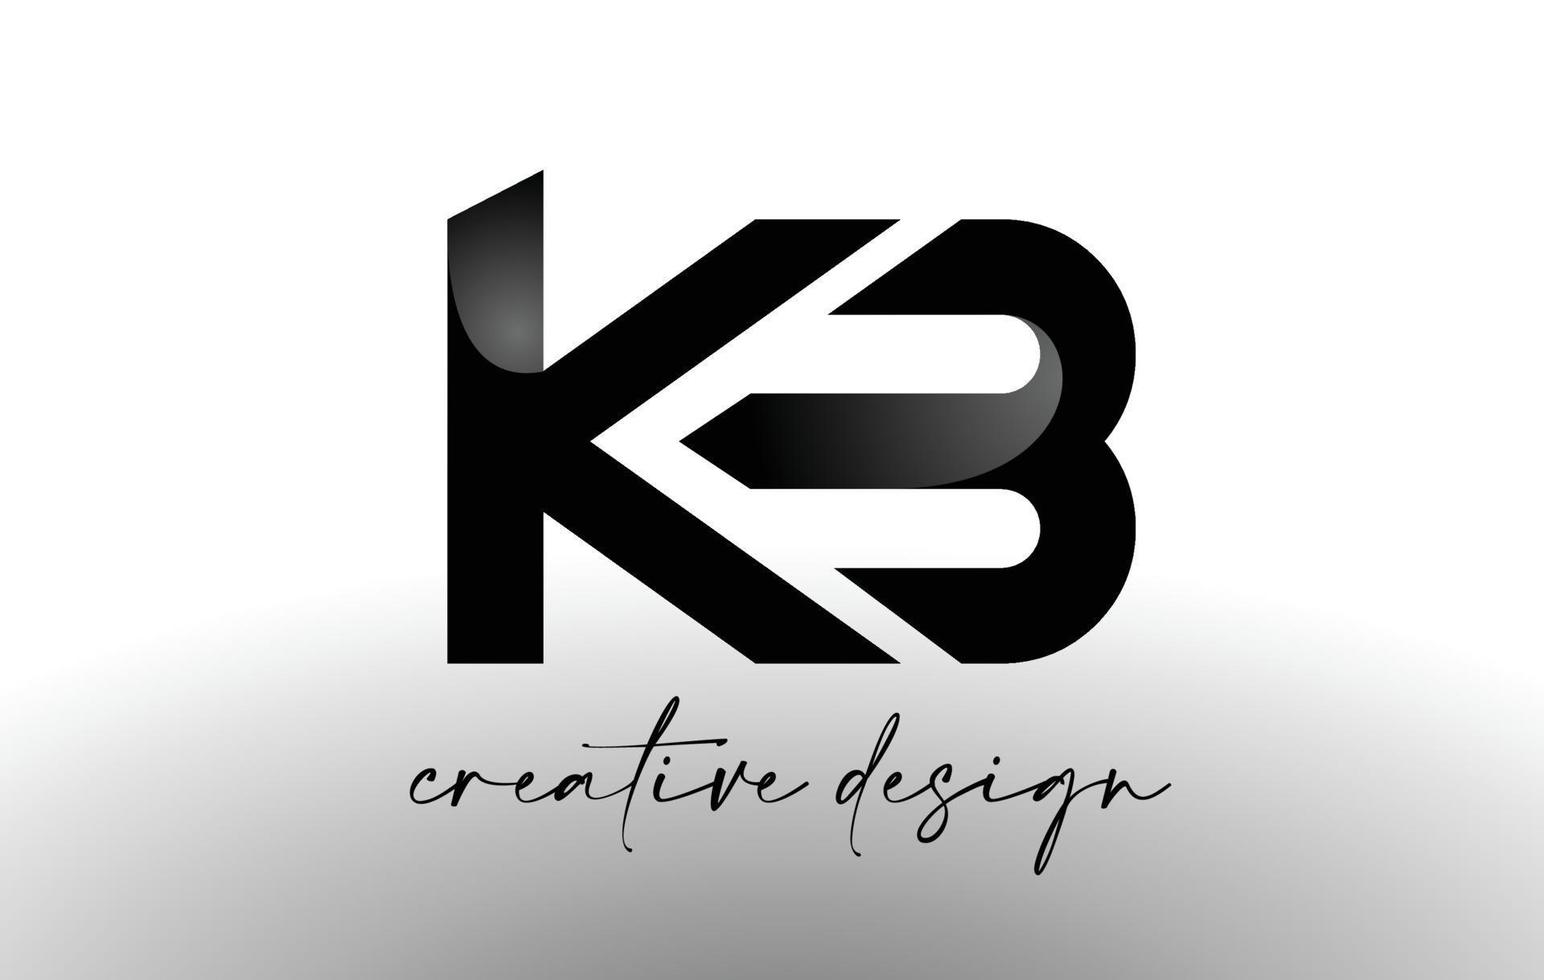 création de logo de lettre kb avec un élégant look minimaliste. vecteur d'icône kb avec un design créatif et un look moderne.